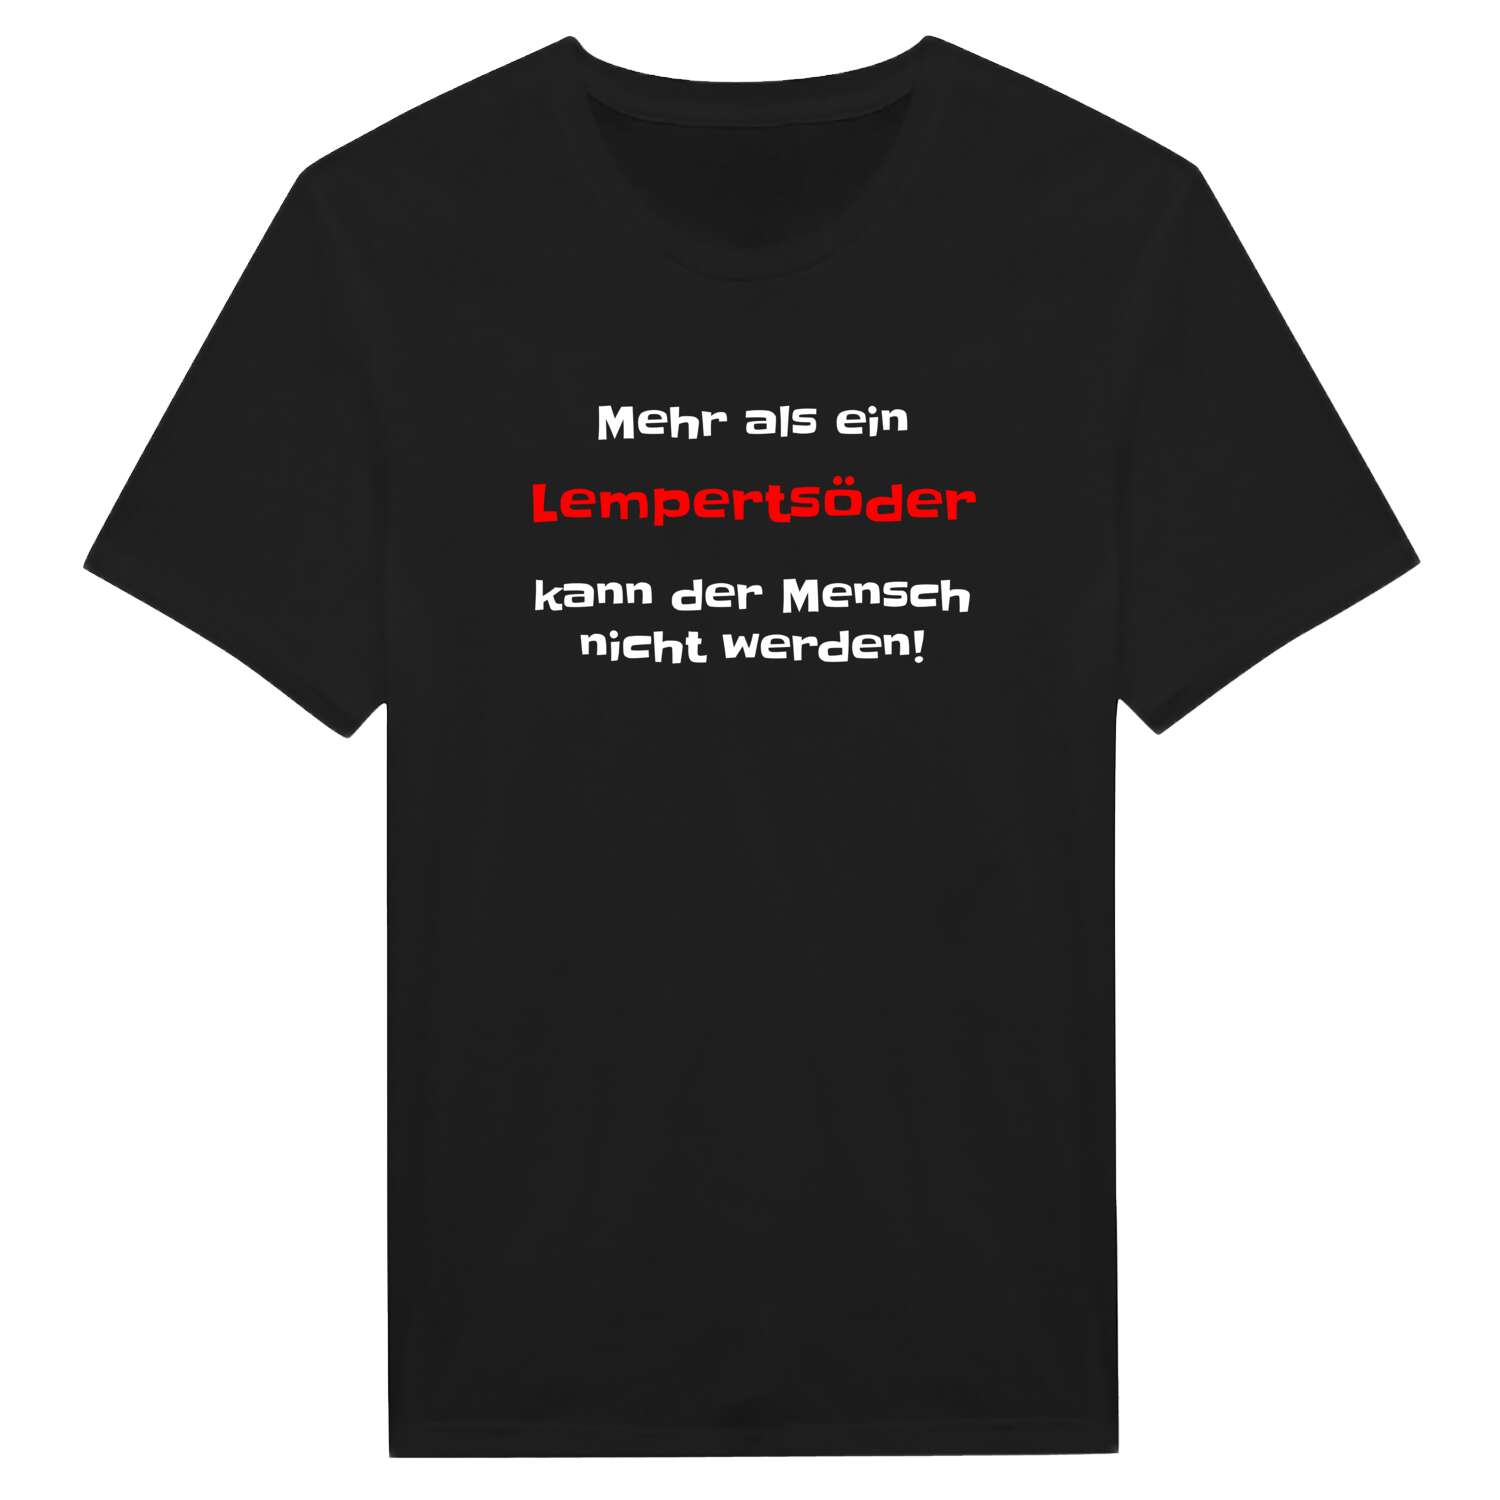 Lempertsöd T-Shirt »Mehr als ein«